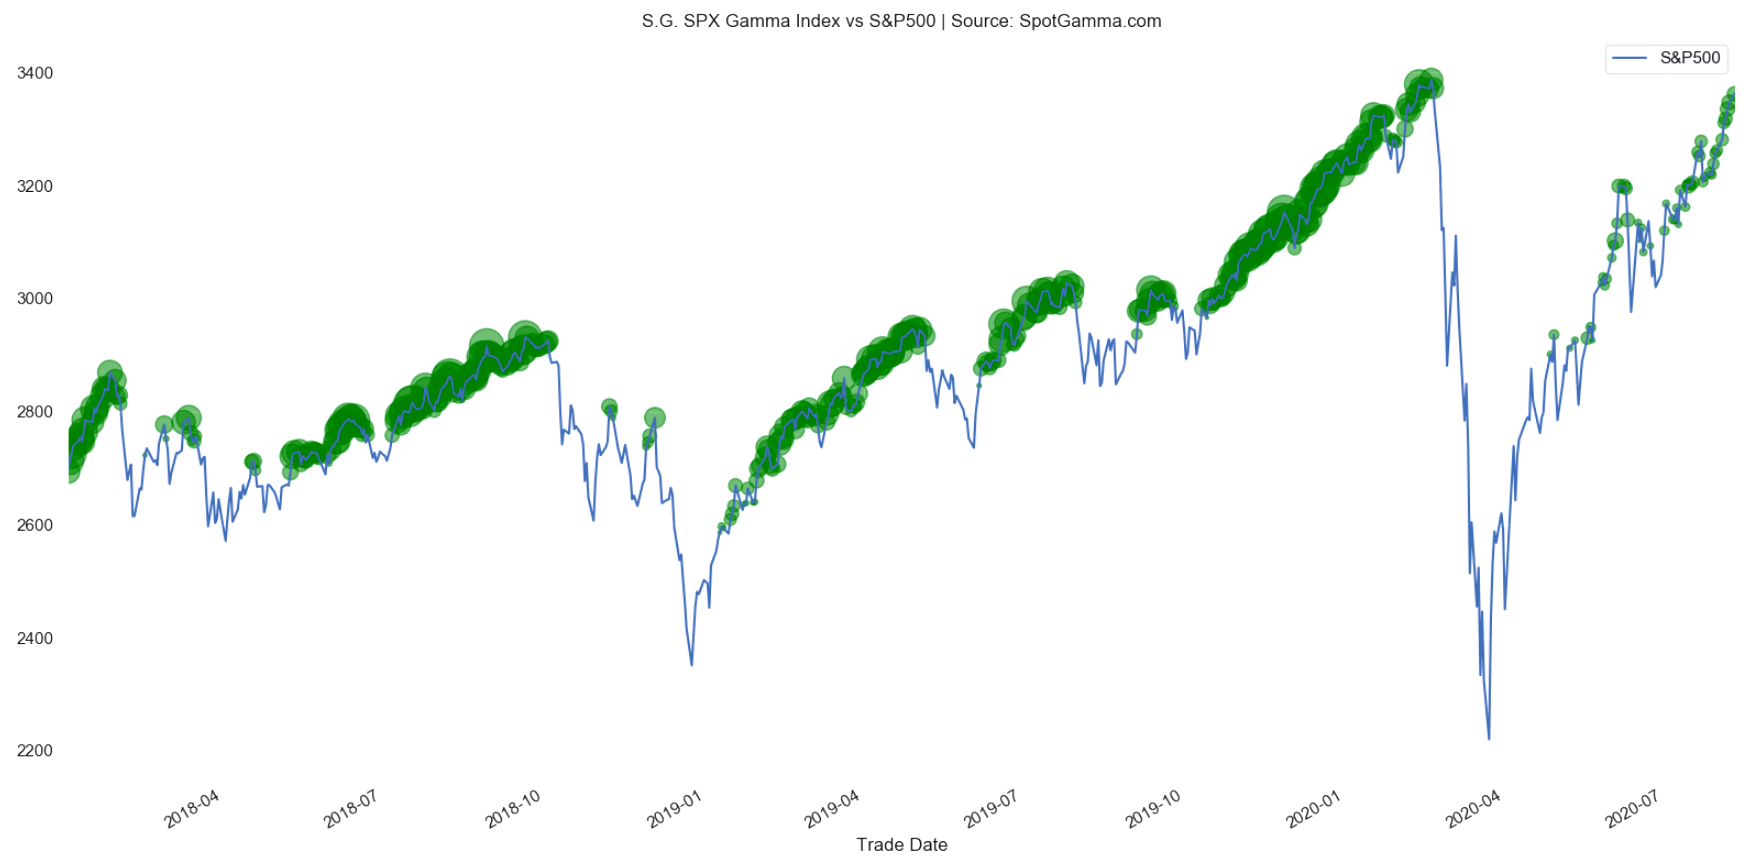 SPX gamma index vs S&P